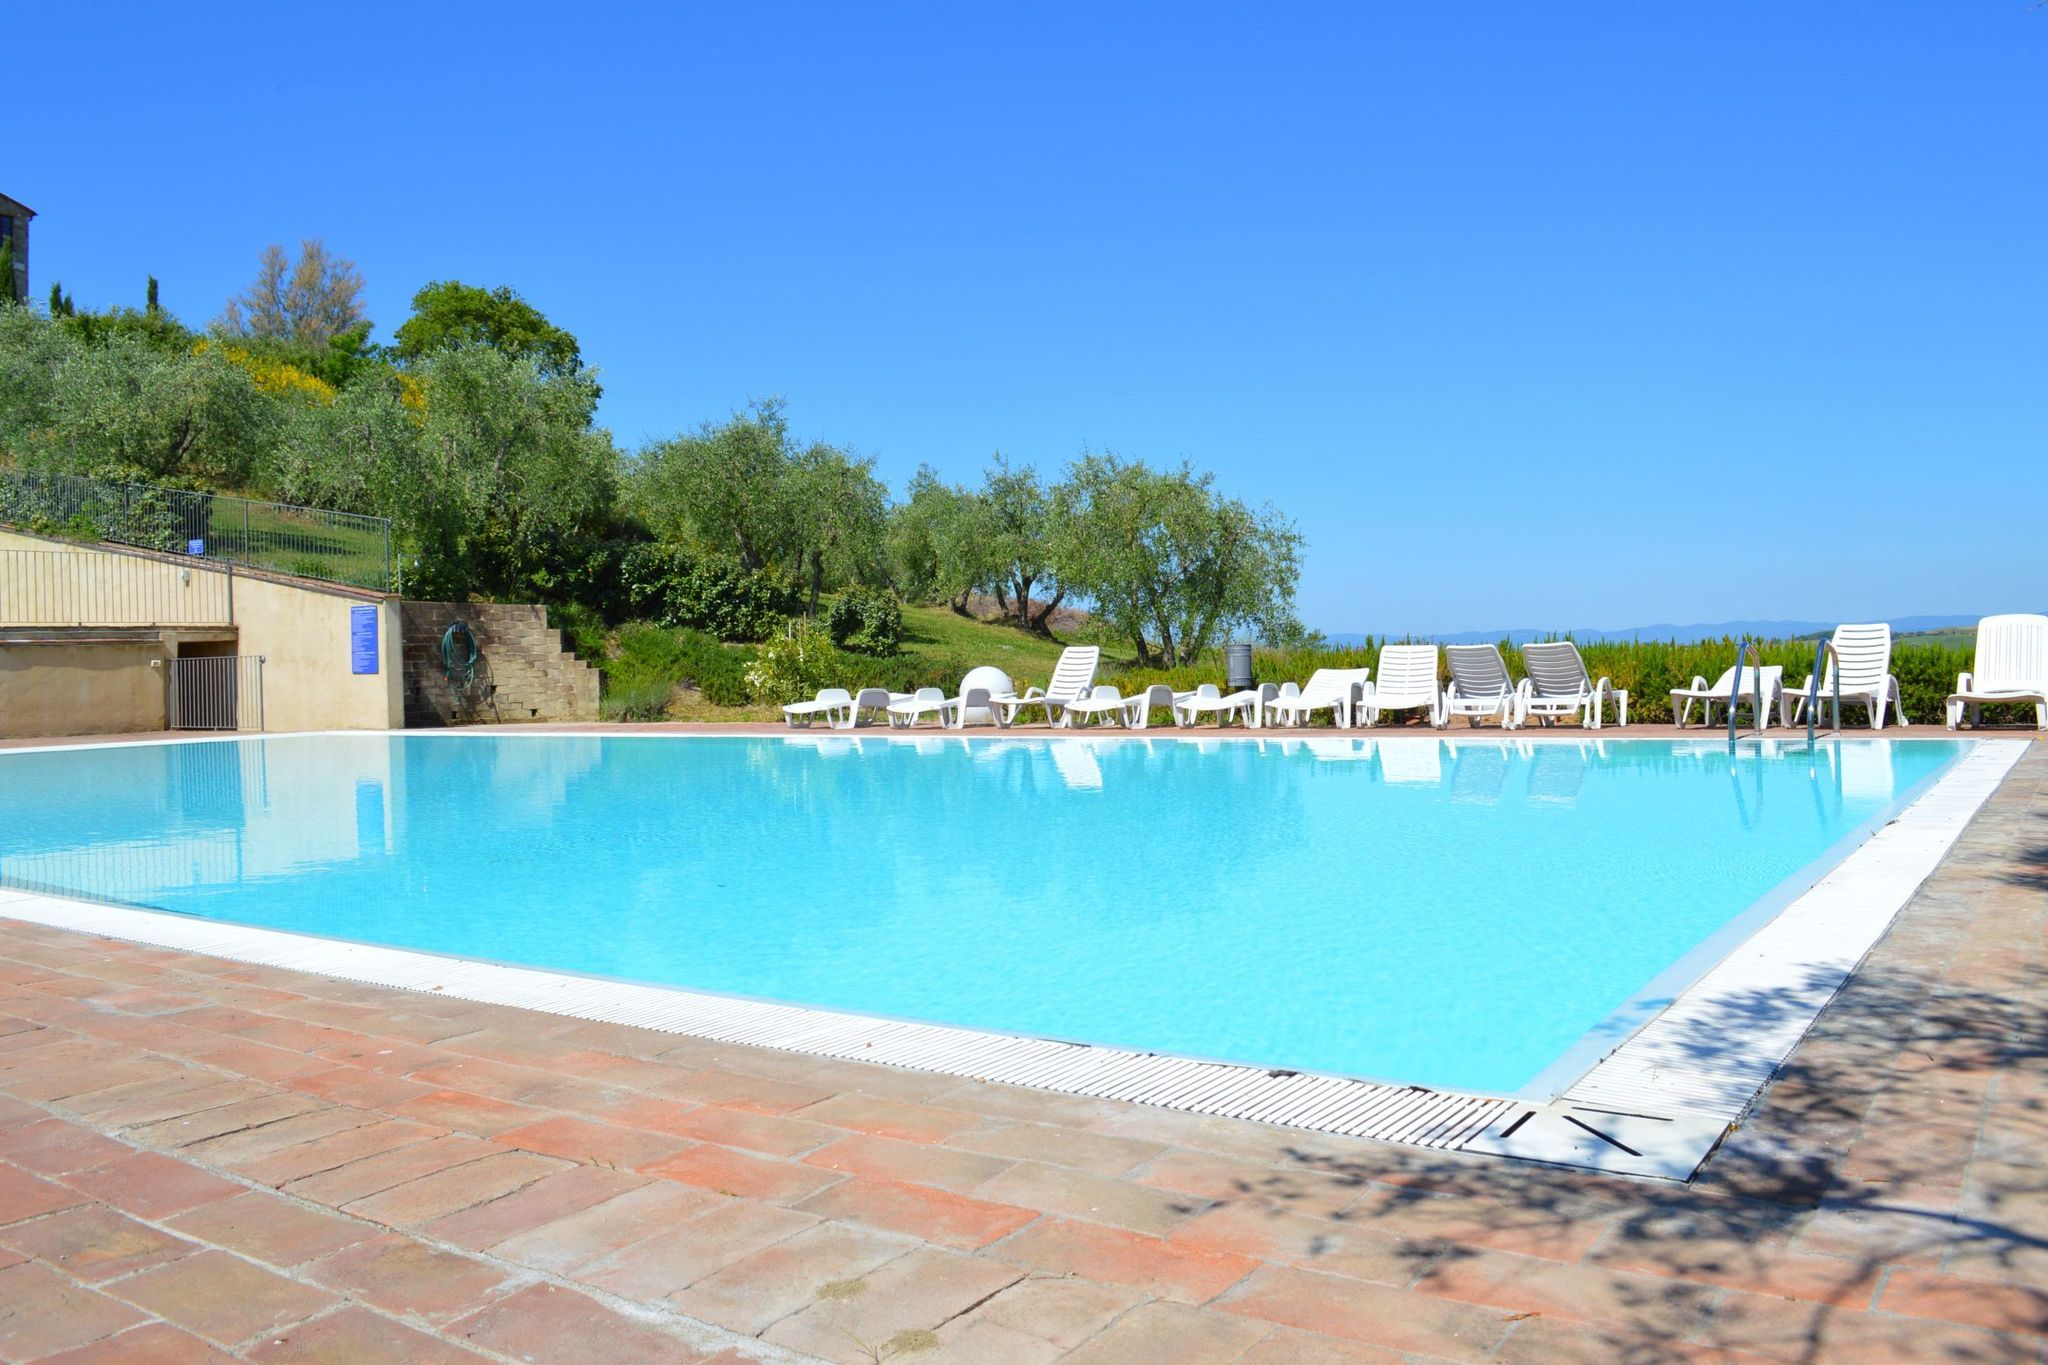 Appartement in Asciano met 2 zwembaden in de heuvels van Siena